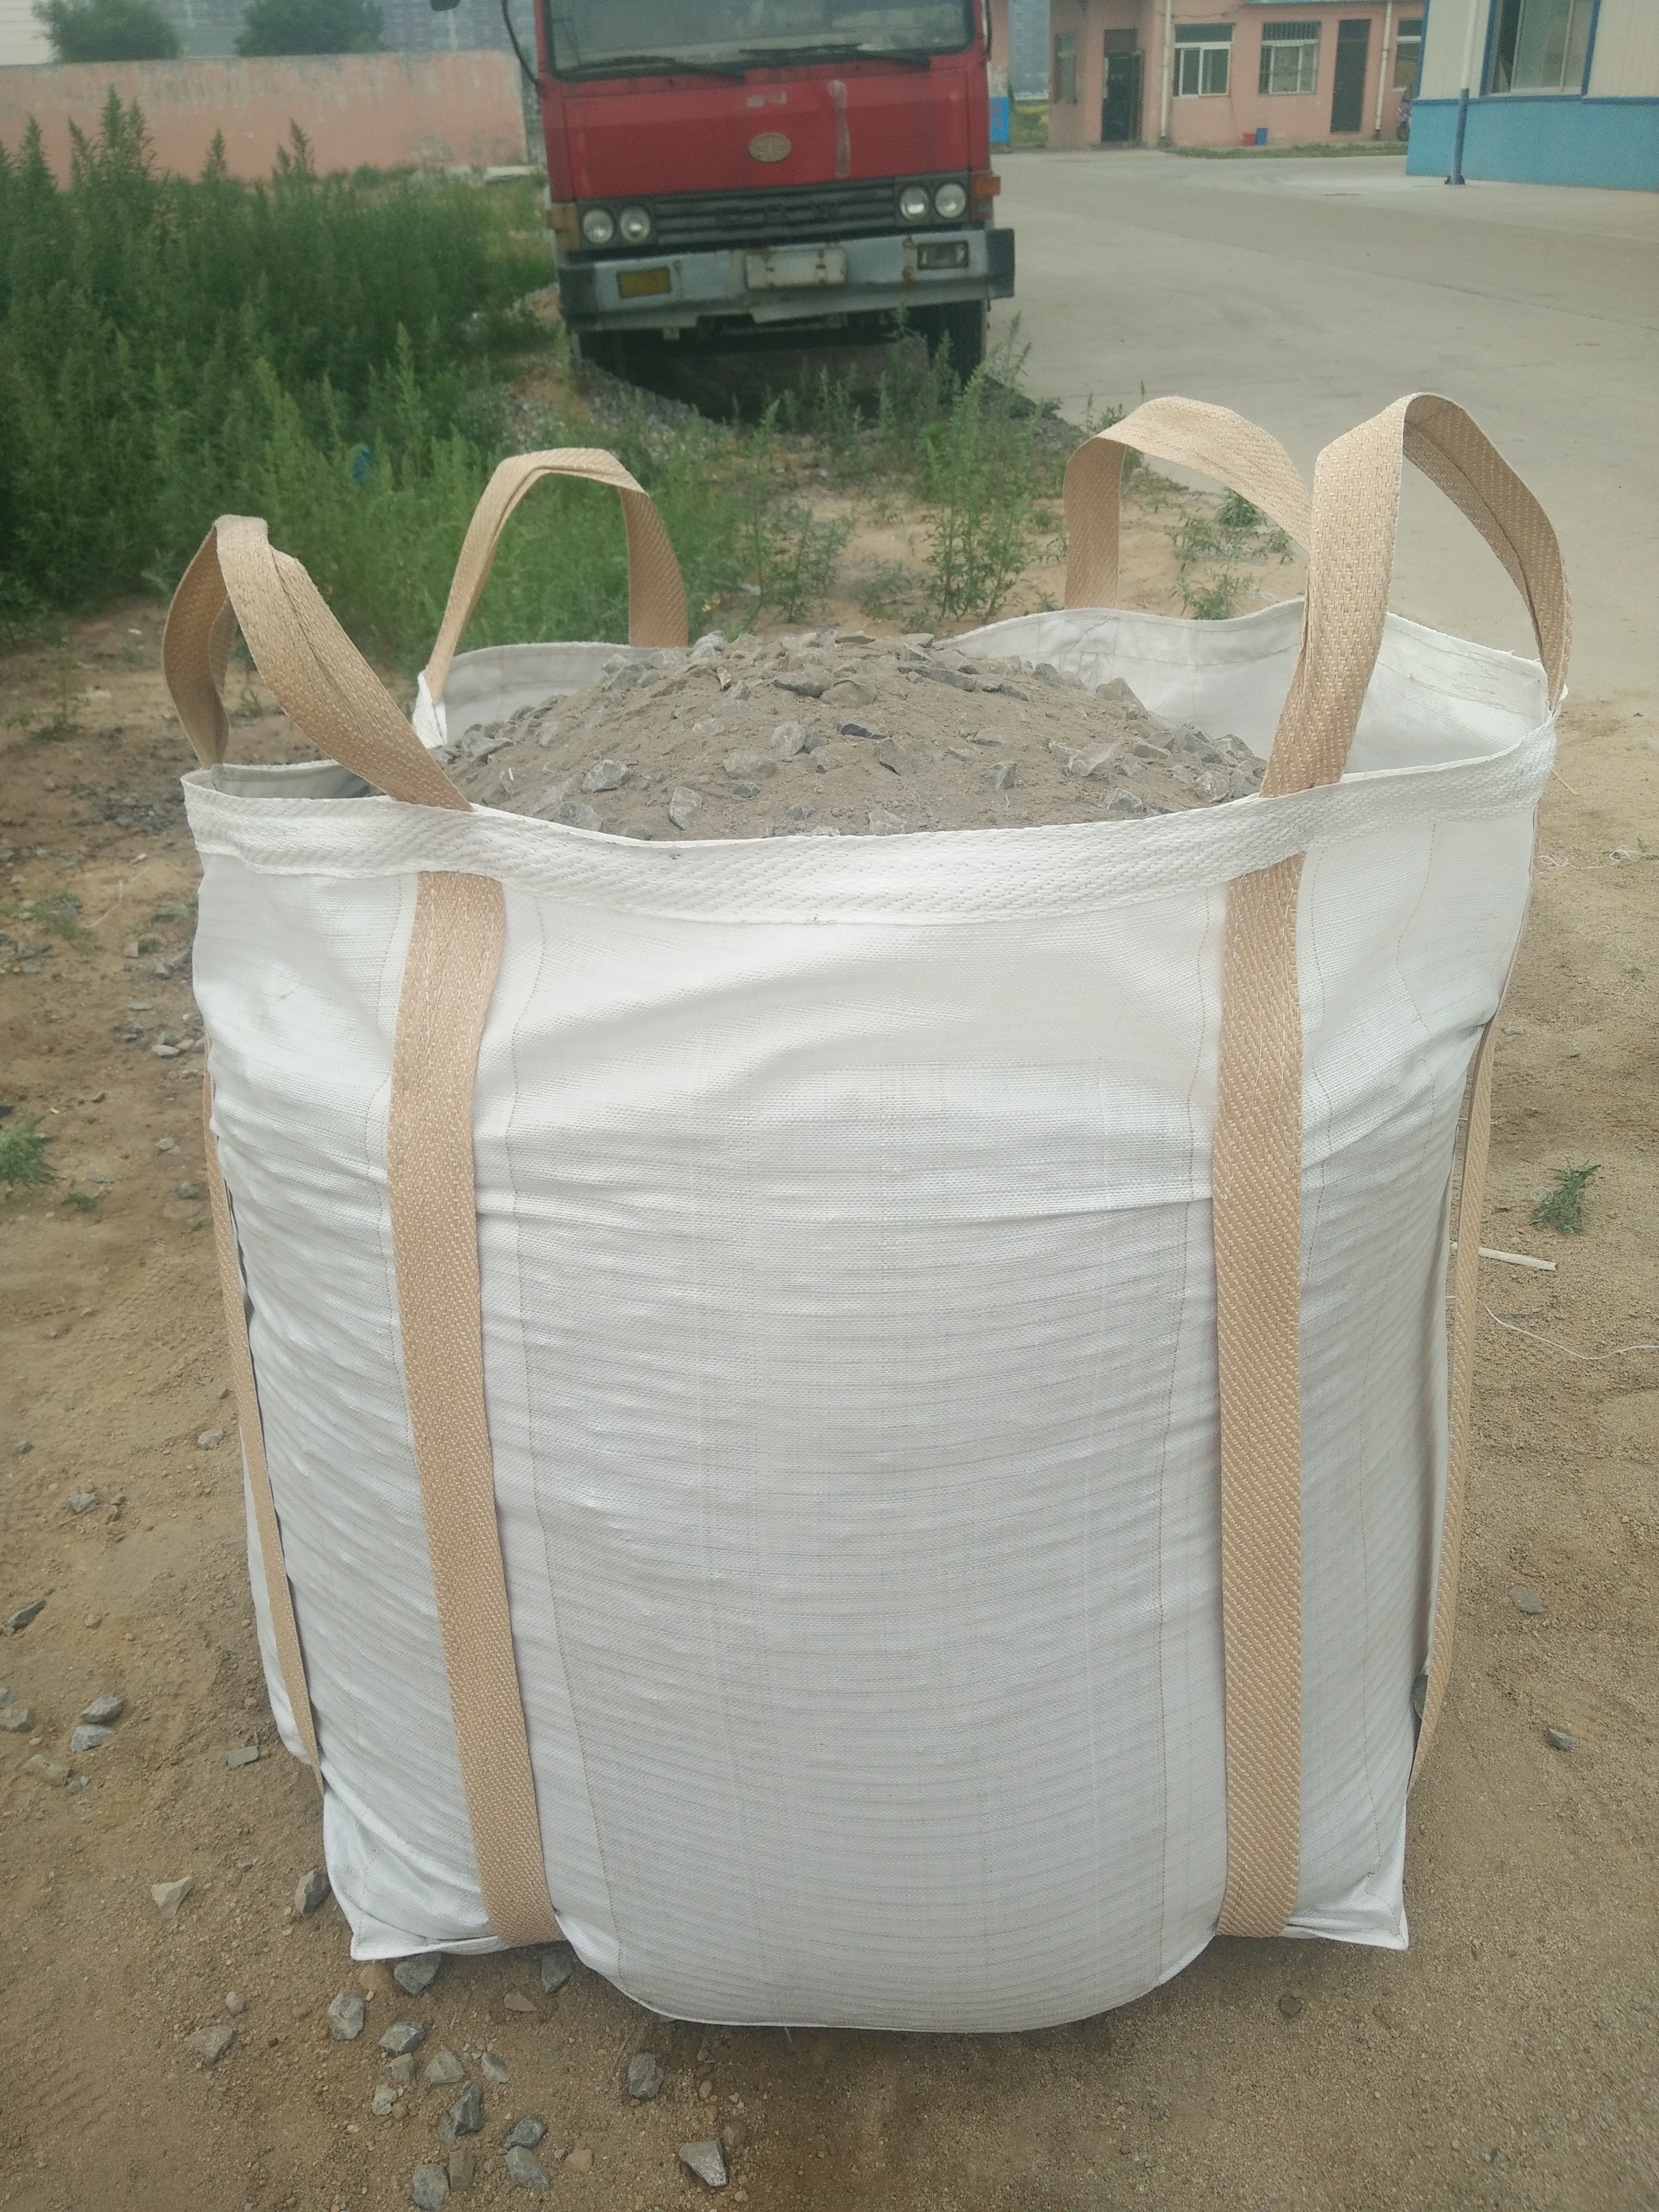 水泥子母袋 德州水泥子母袋供应商直销 水泥子母袋厂商批发价格